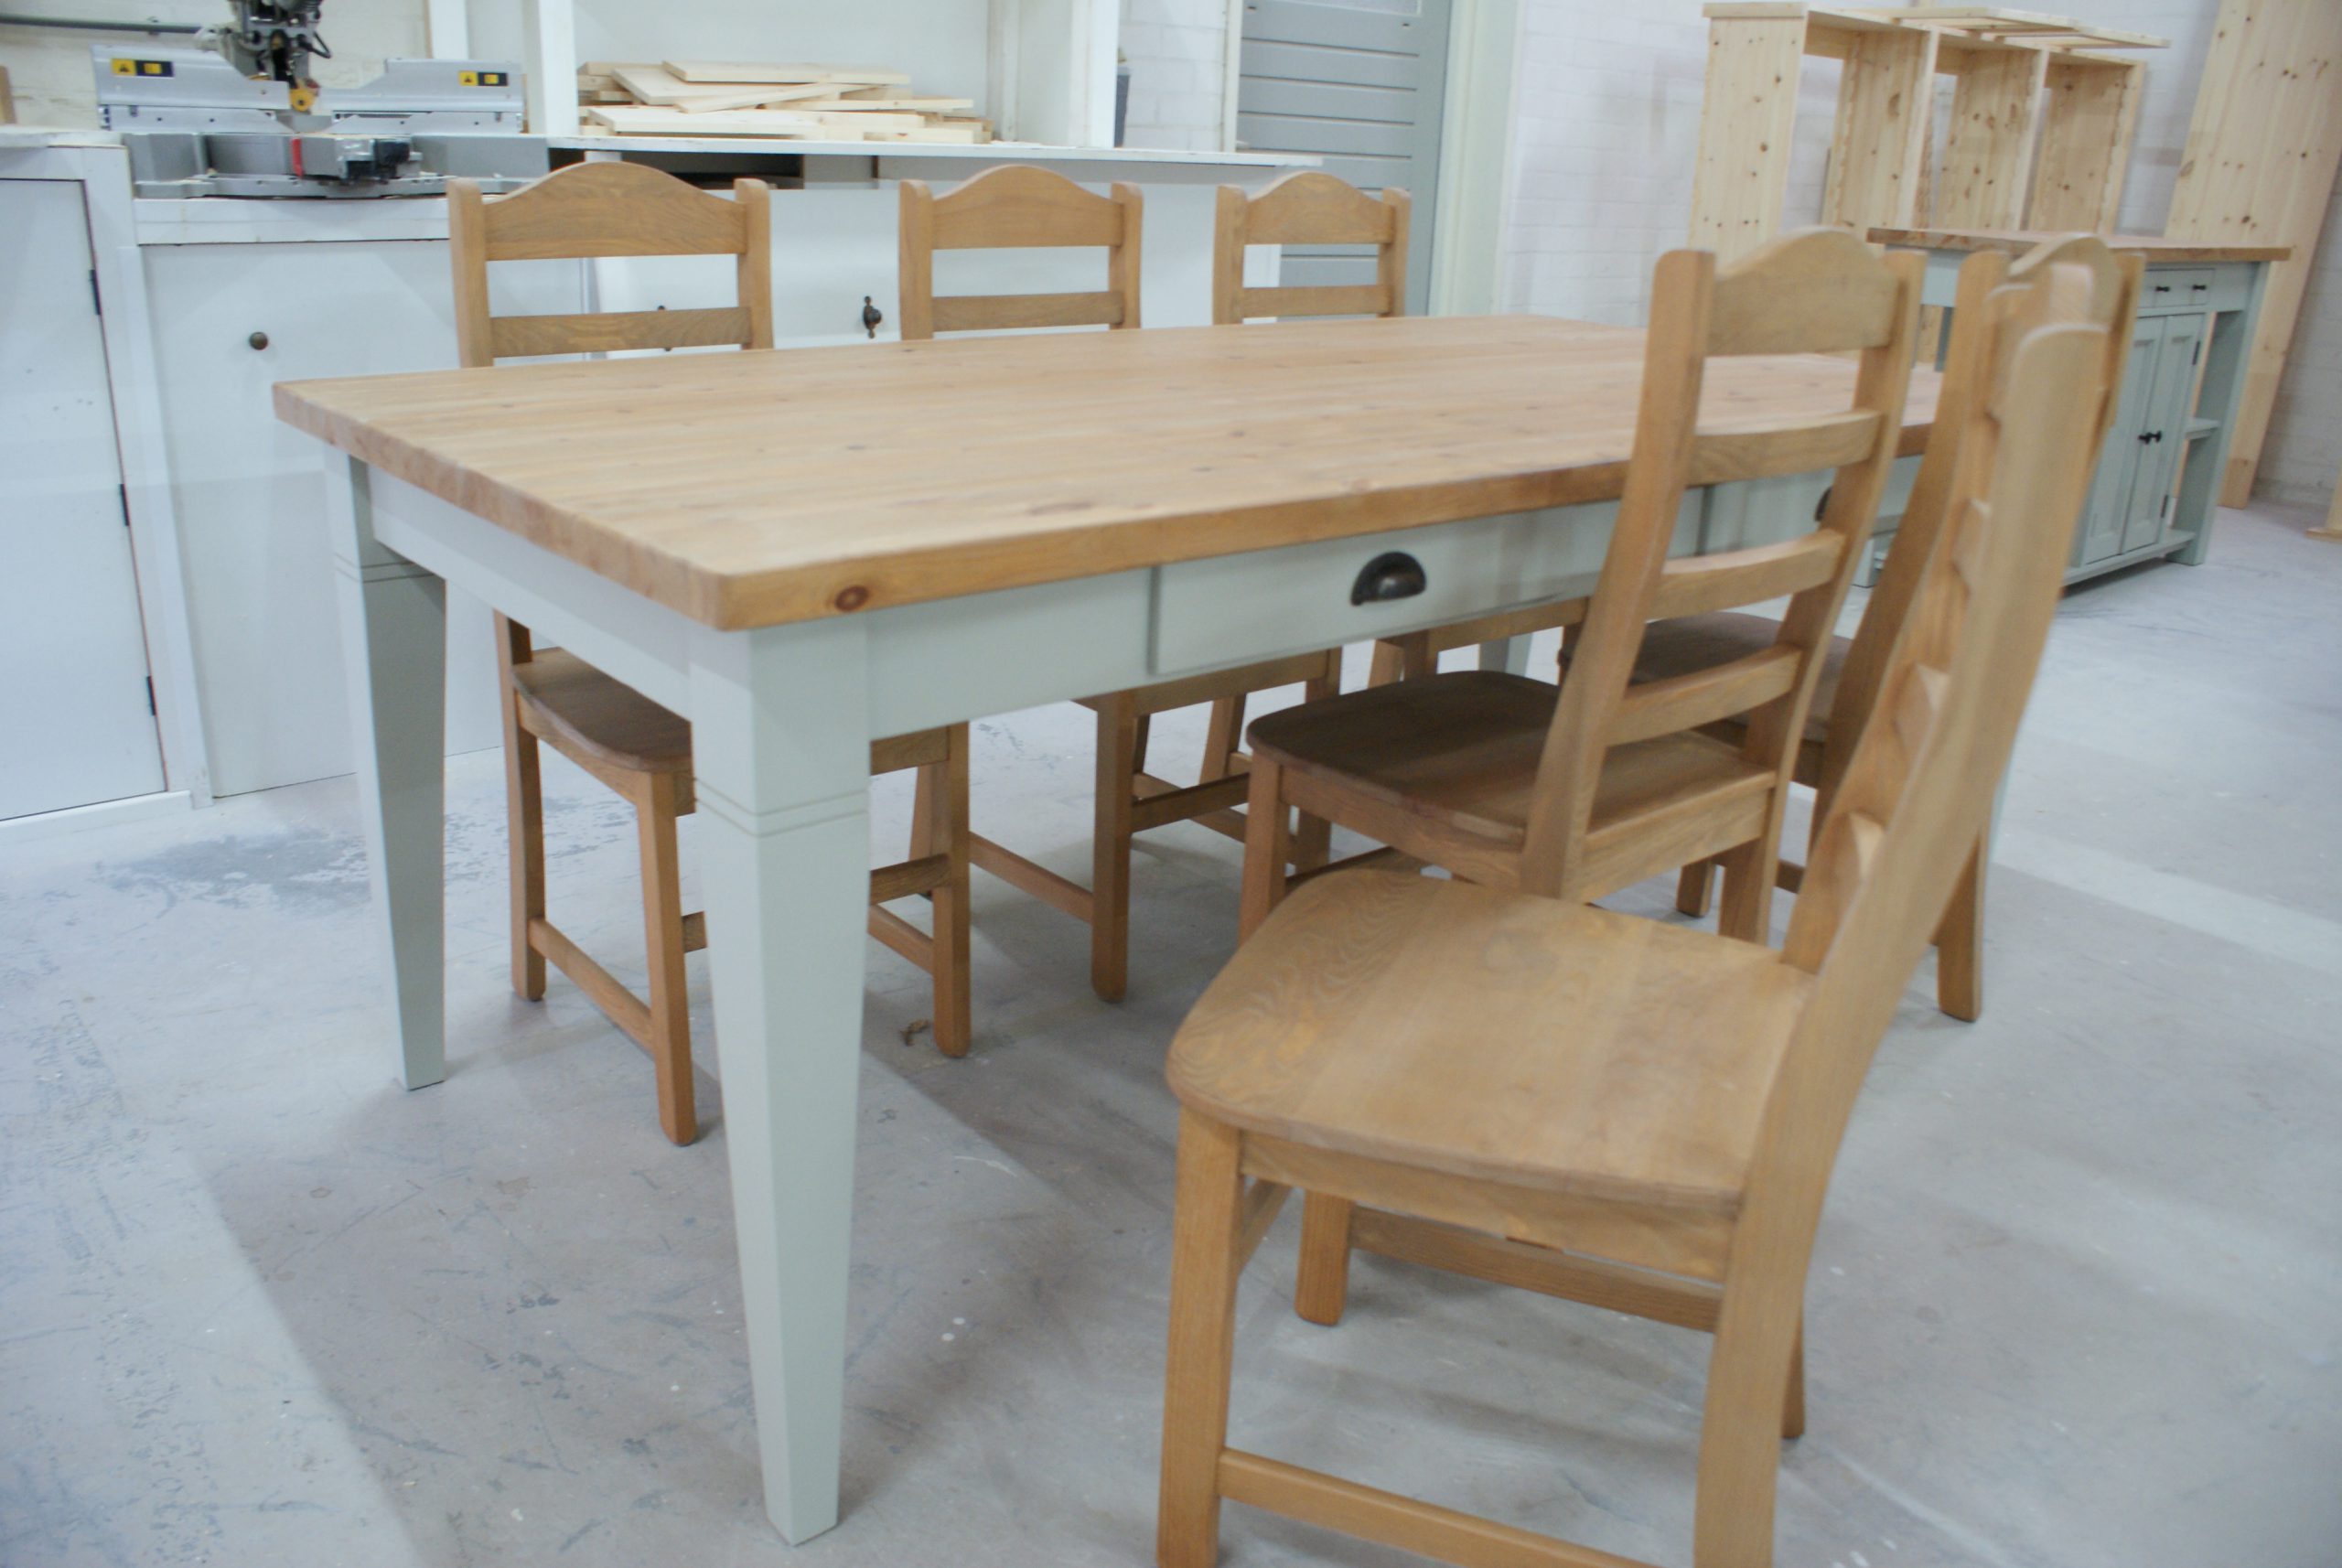 climax Wissen Serena Landelijke tafel en stoelen vindt u bij meubelmakerij de Grenenhoeve!